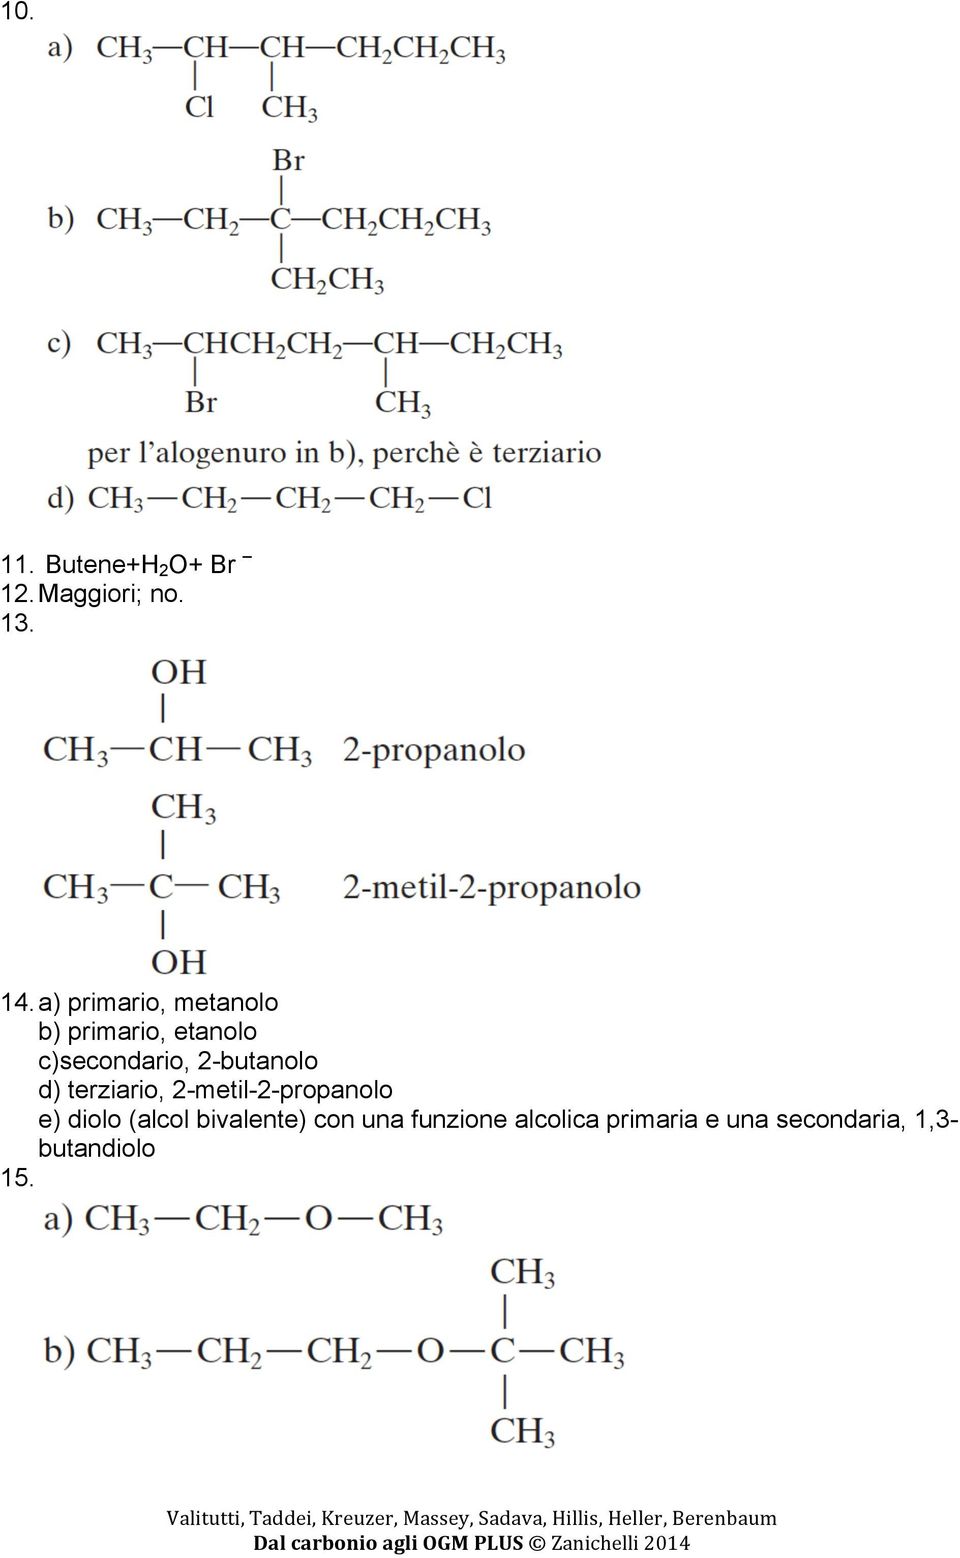 2-butanolo d) terziario, 2-metil-2-propanolo e) diolo (alcol